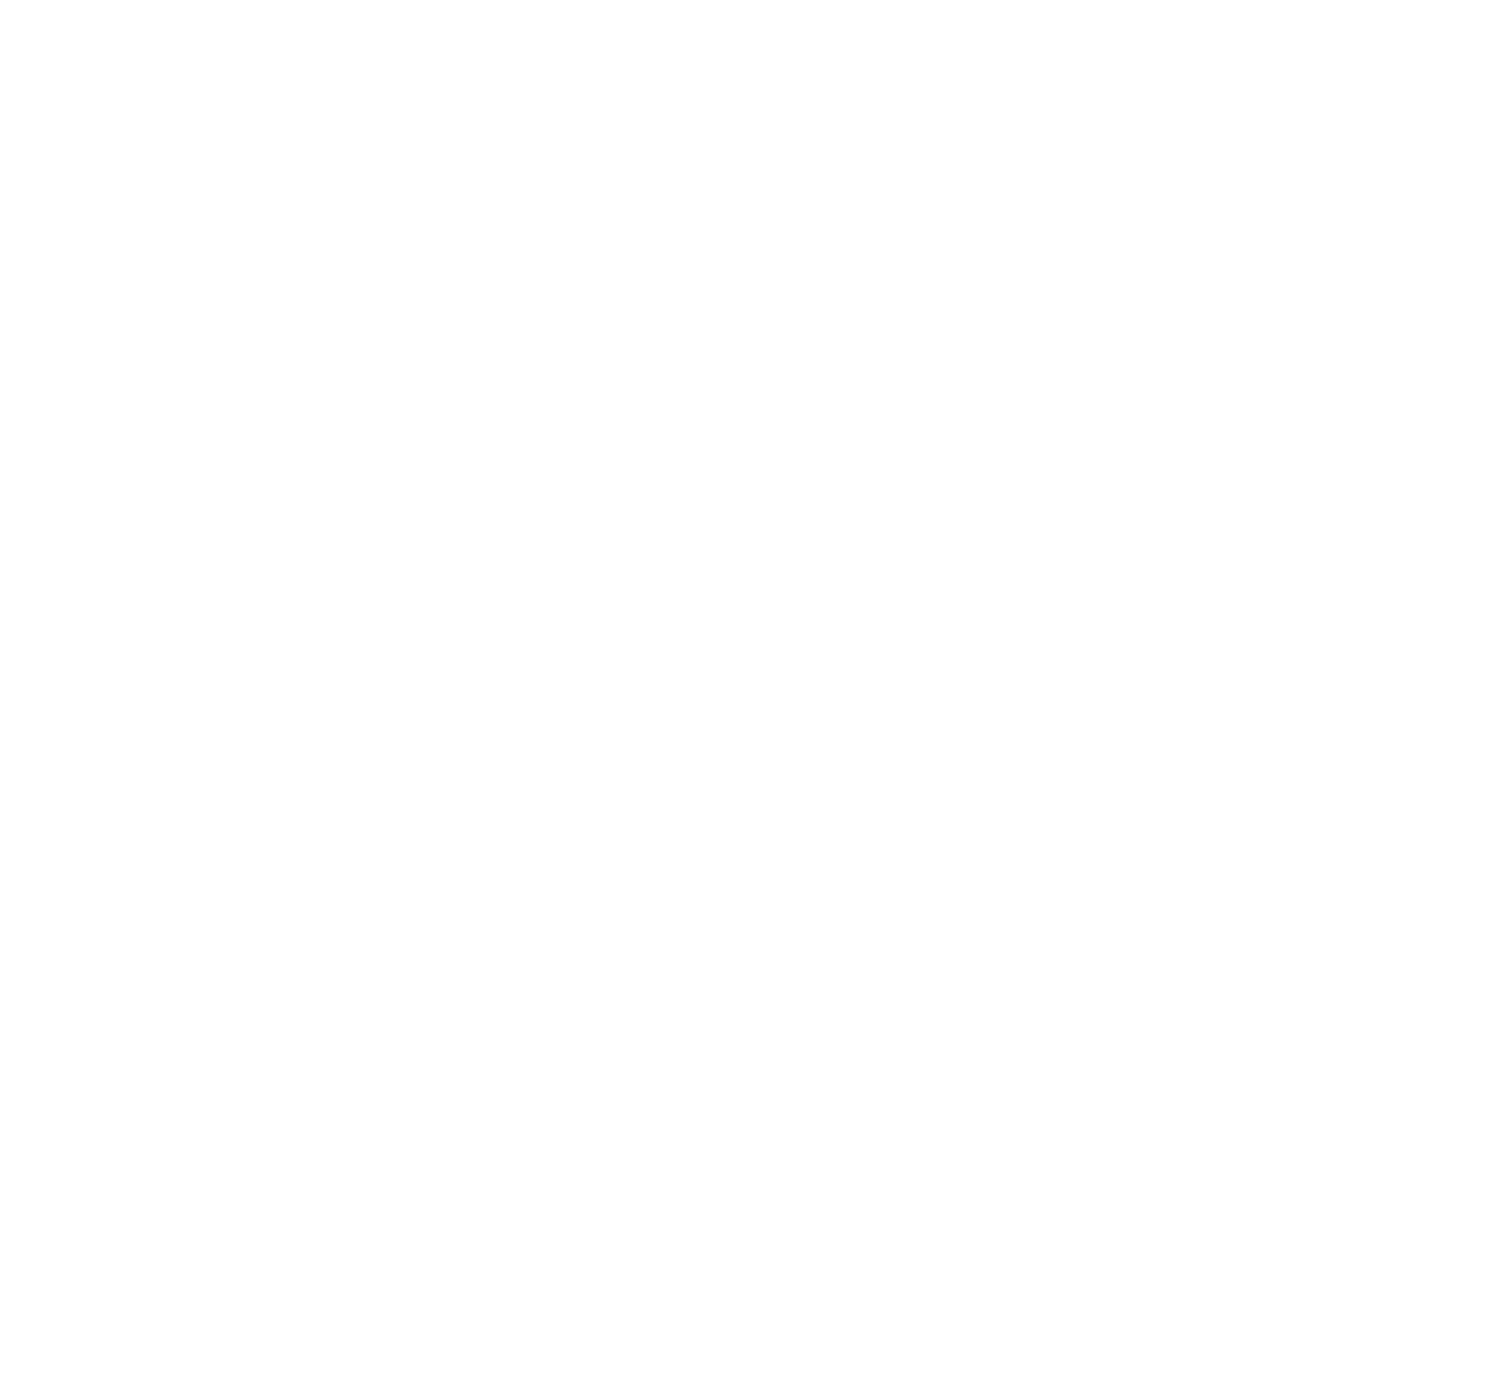 Edison logo for dark backgrounds (transparent PNG)